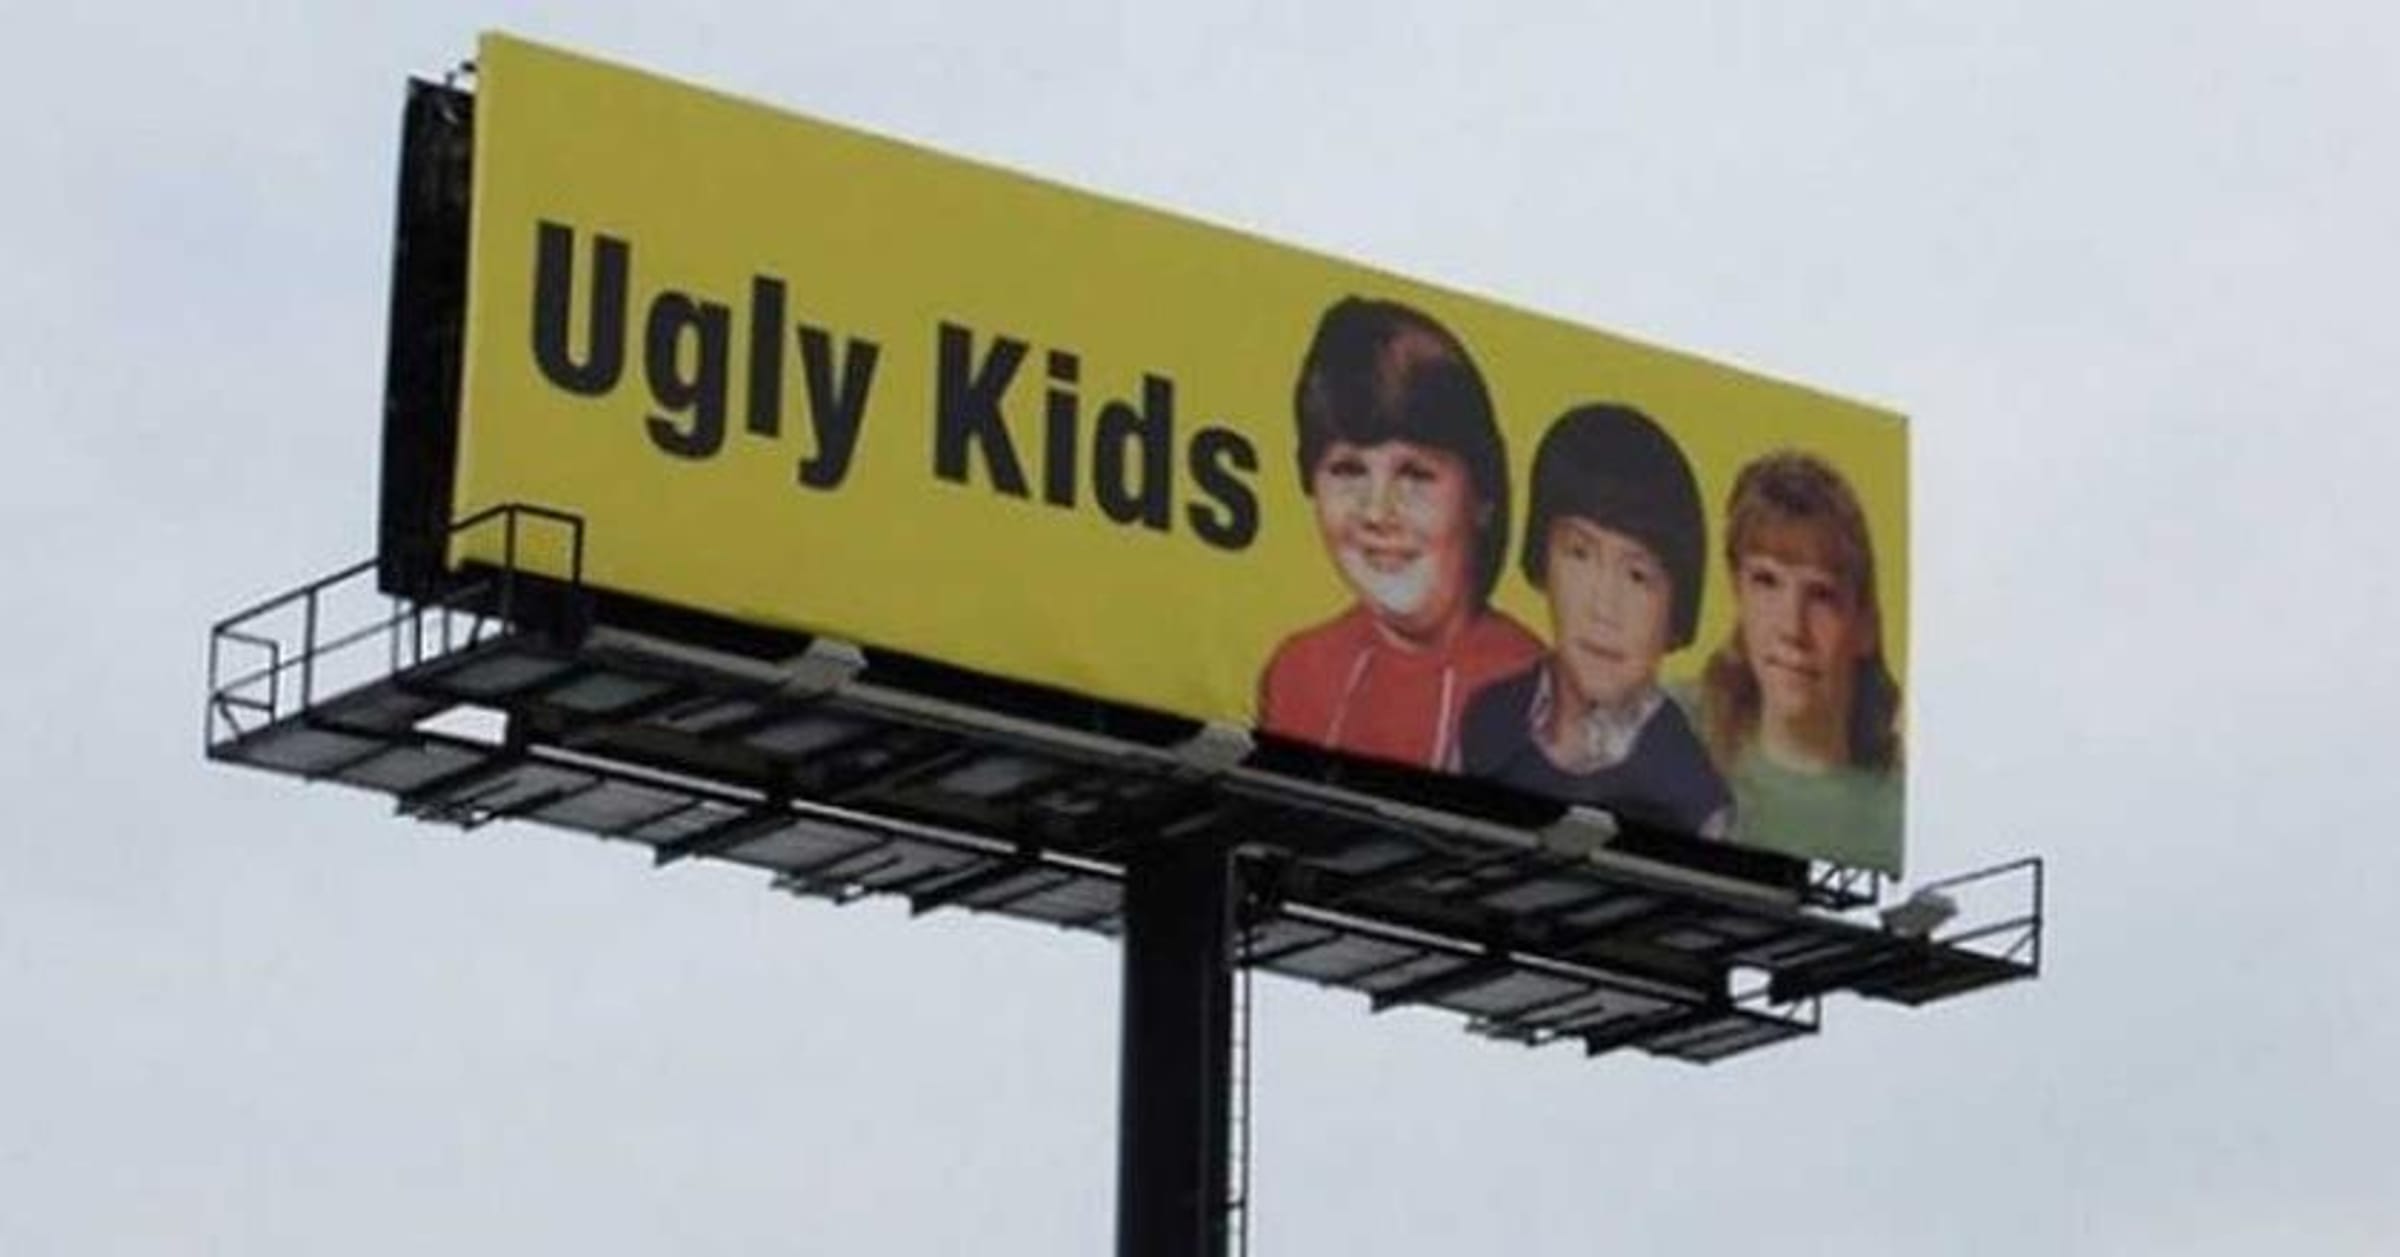 funny billboards for kids